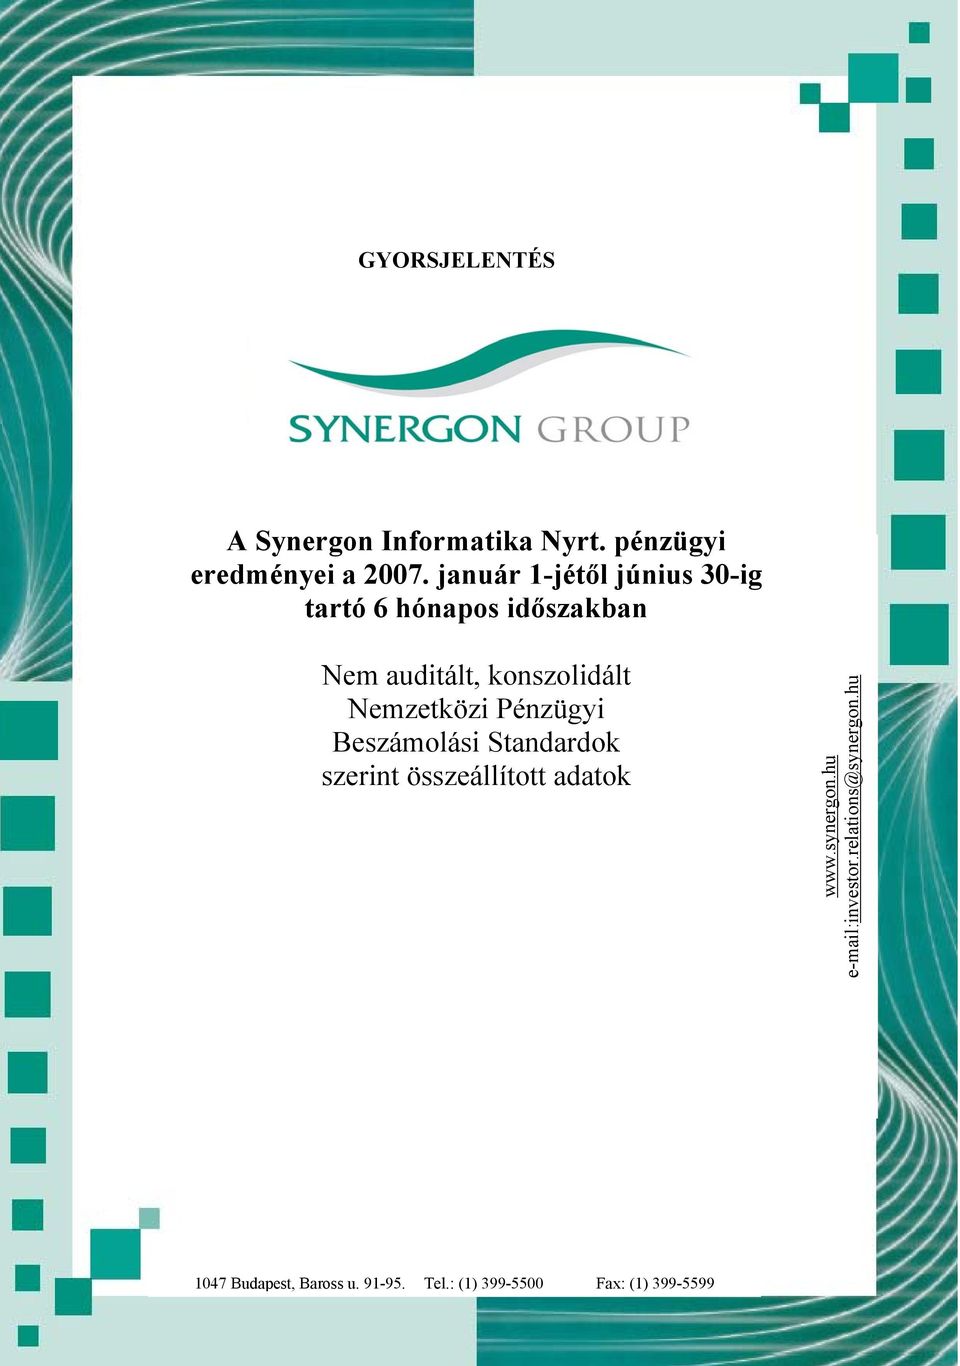 Beszámolási Standardok szerint összeállított adatok www.synergon.hu e-mail:investor.relations@synergon.